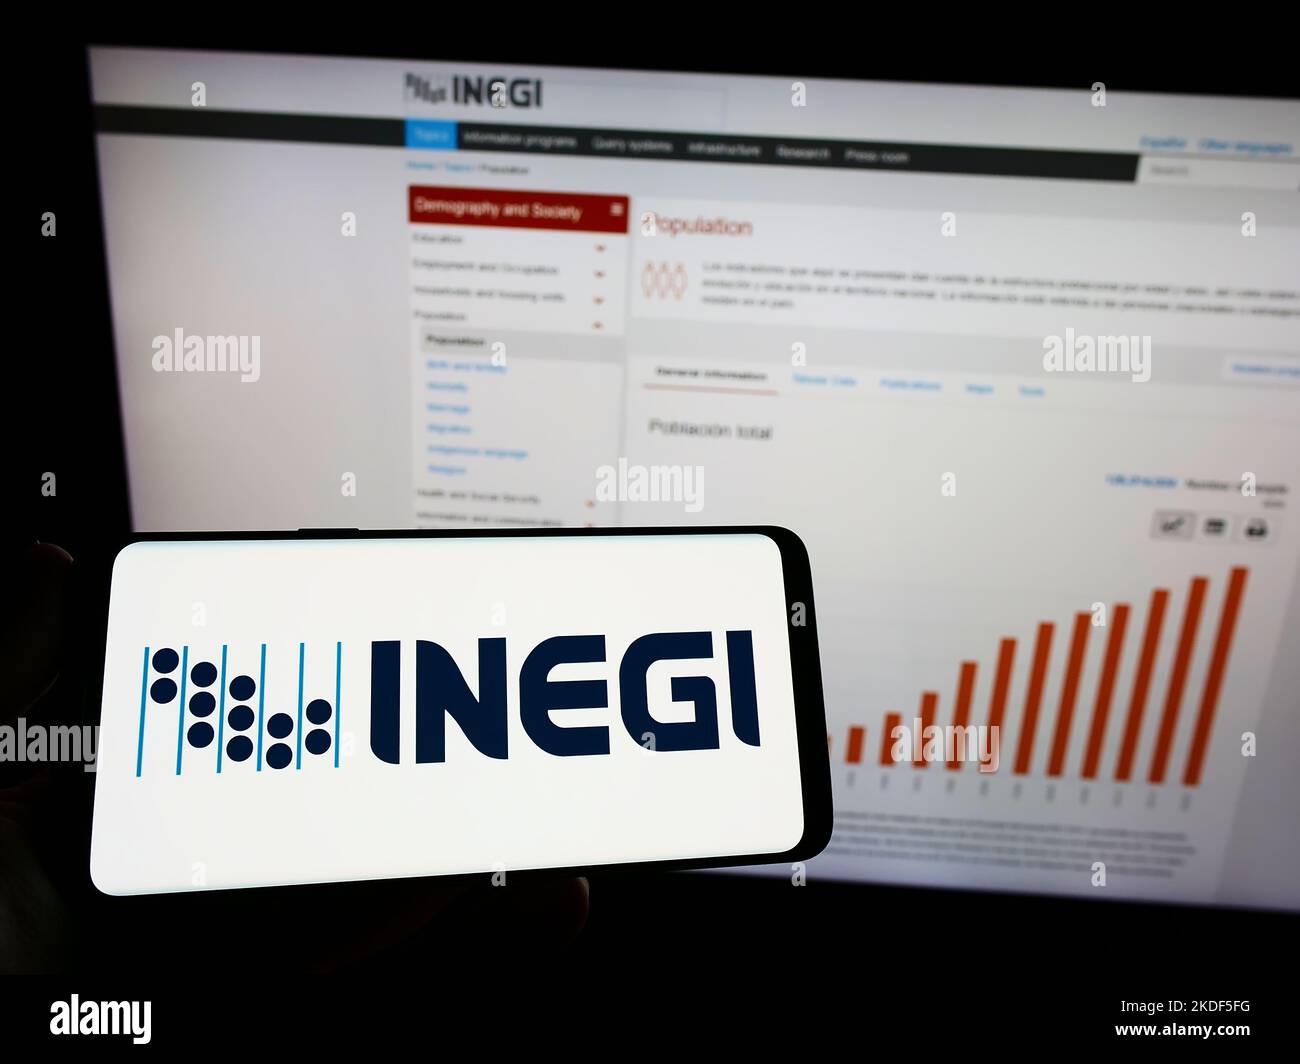 Persona in possesso di smartphone con il logo dell'agenzia di statistiche messicane INEGI sullo schermo di fronte al sito web. Messa a fuoco sul display del telefono. Foto Stock